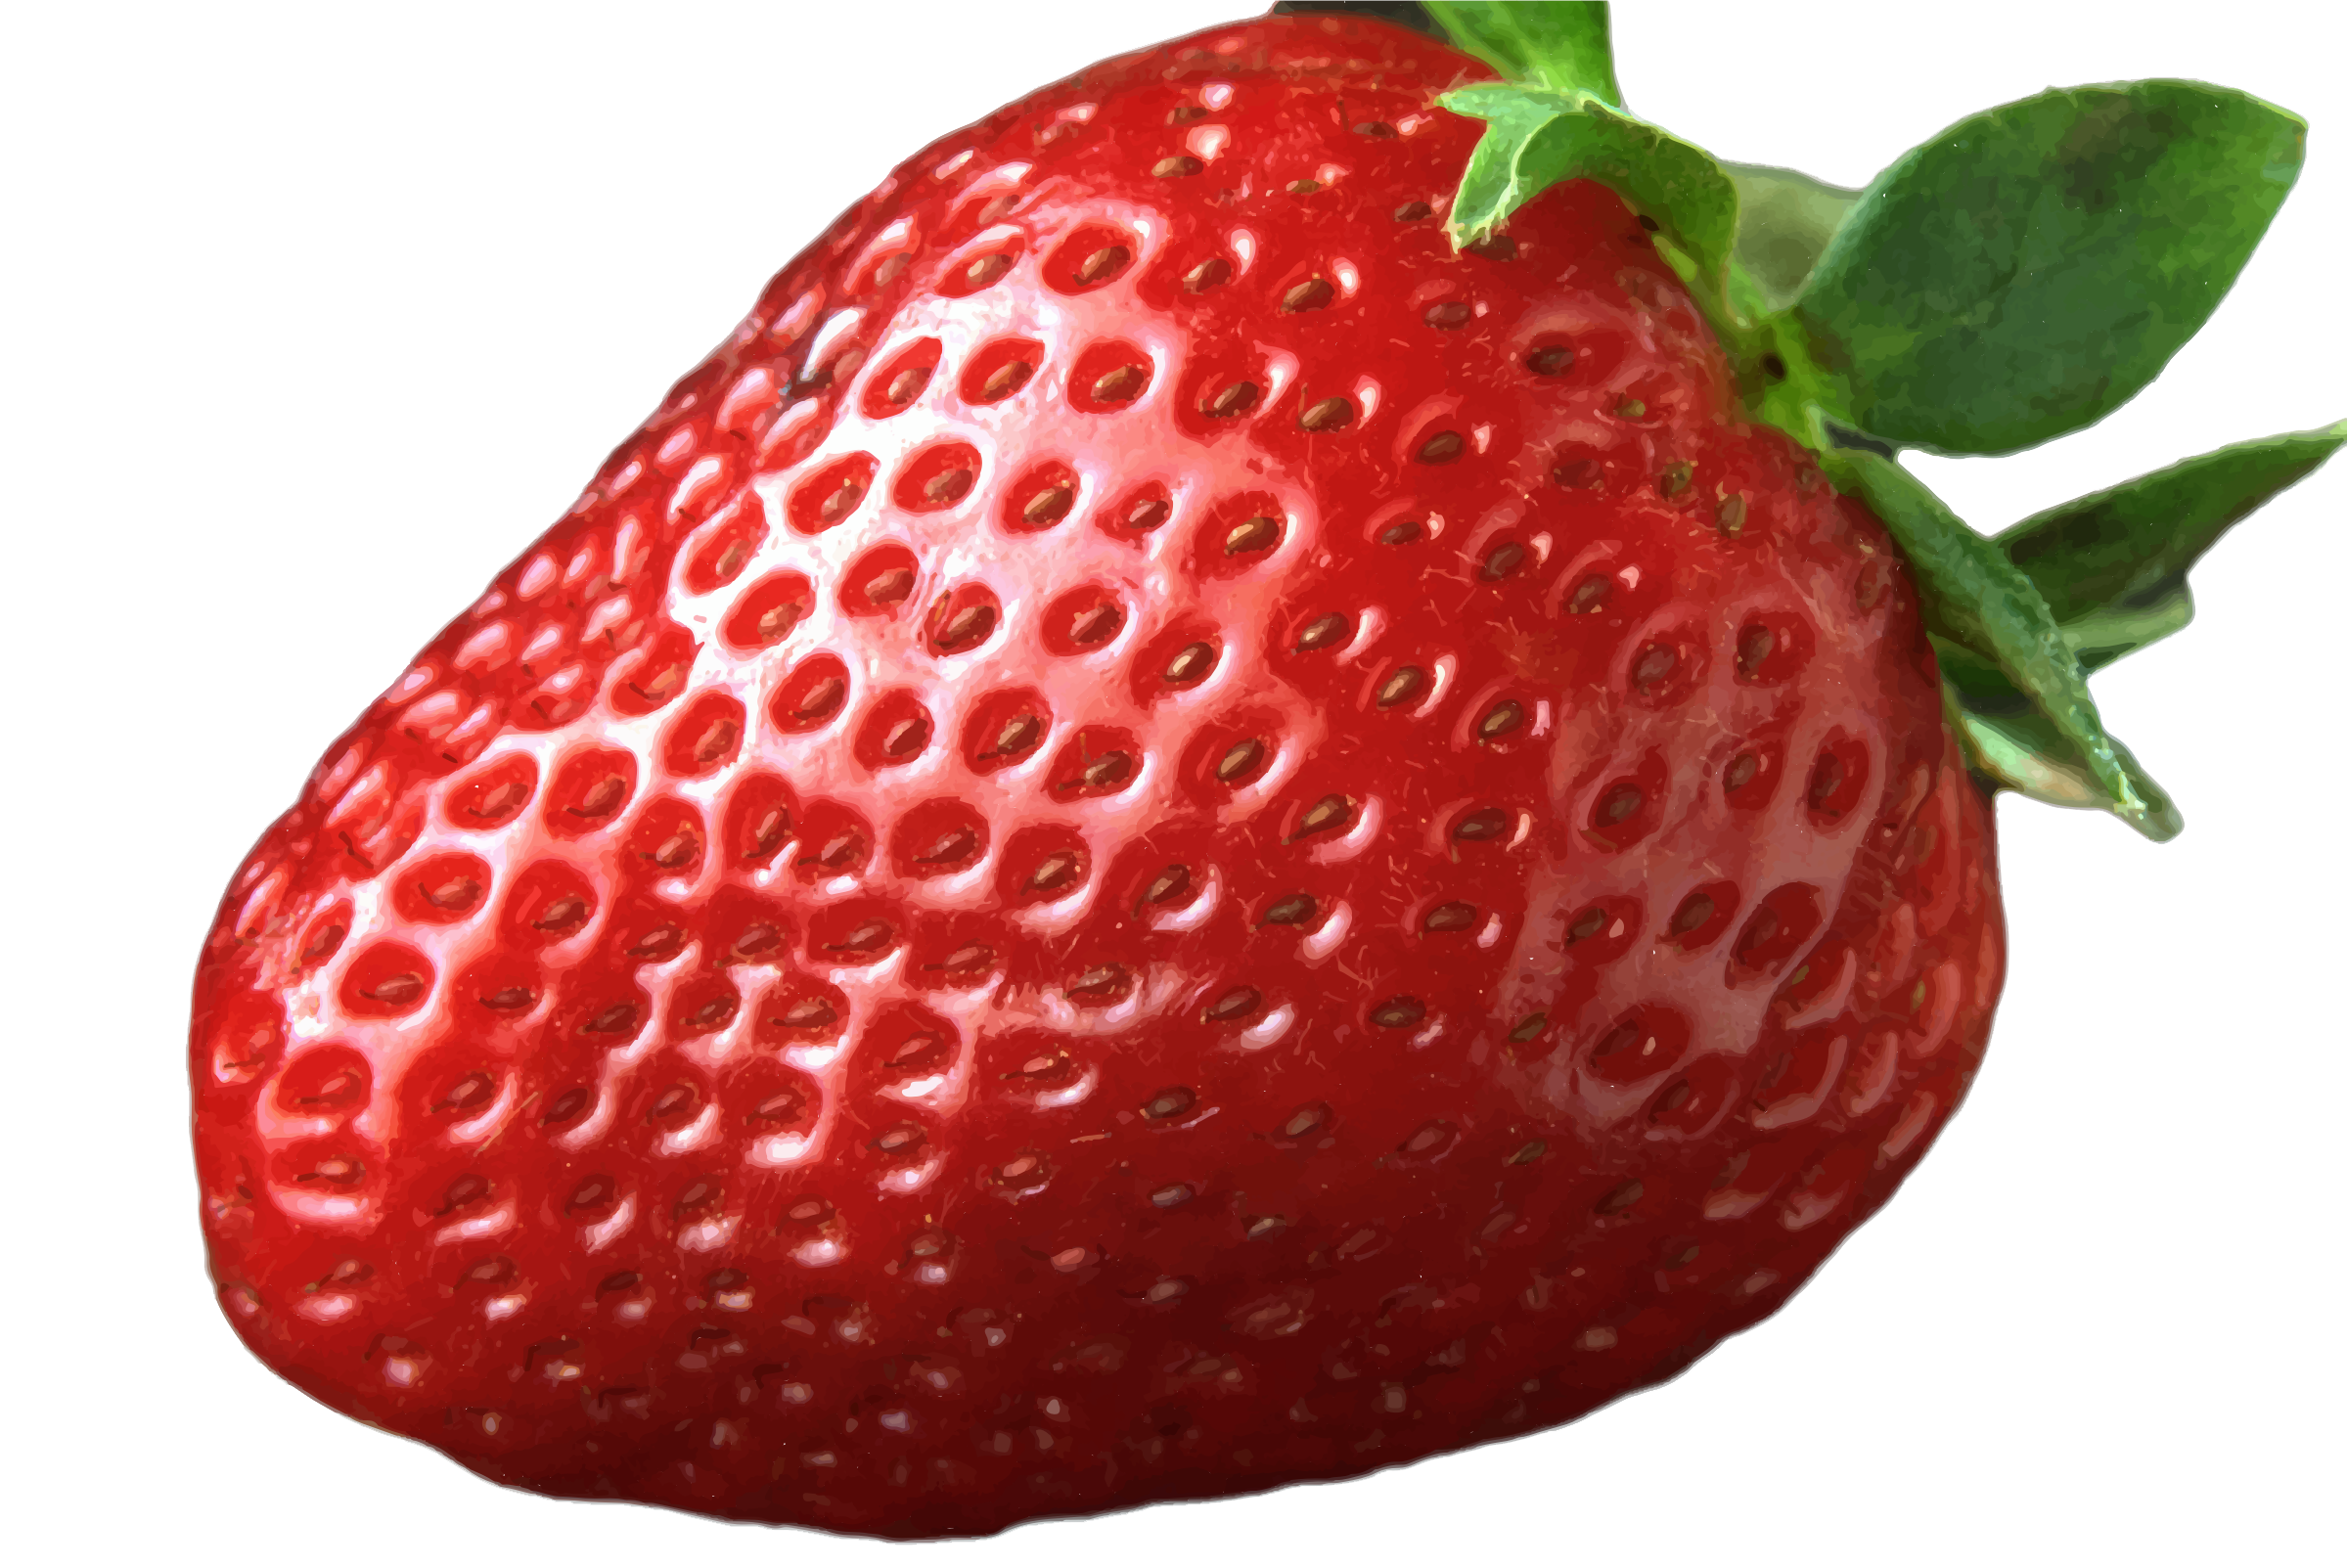 Strawberry Transparent